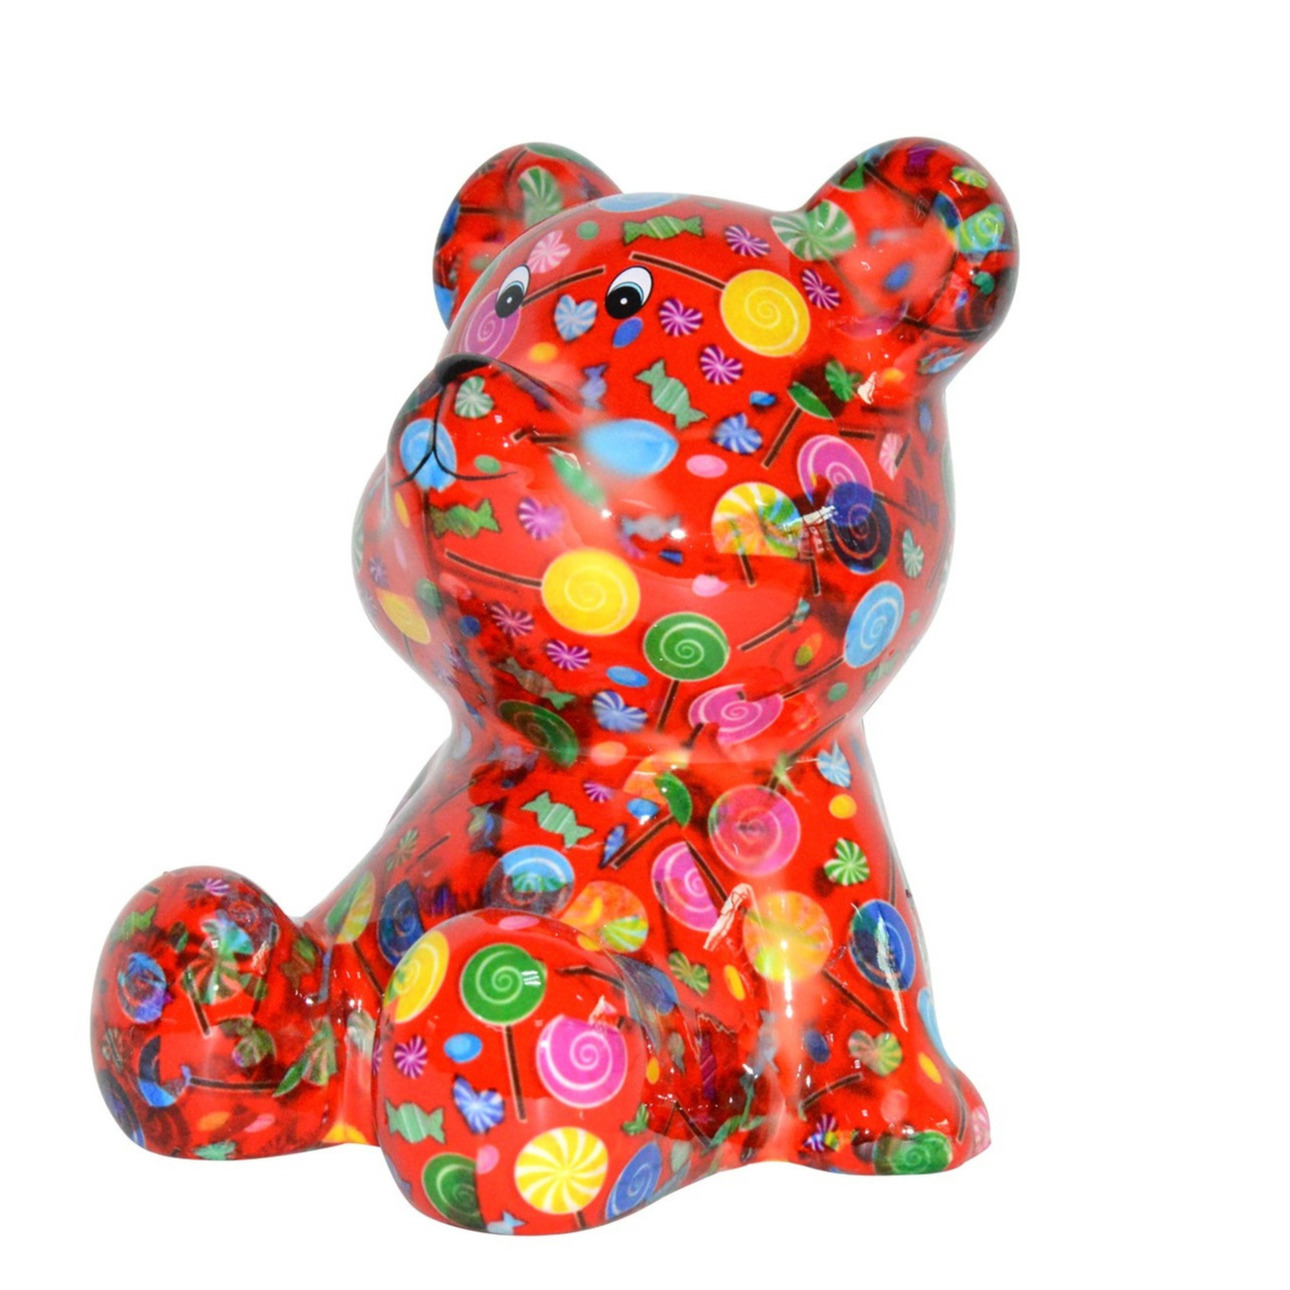 Kado spaarpot beer rood met snoepjes print 16 cm